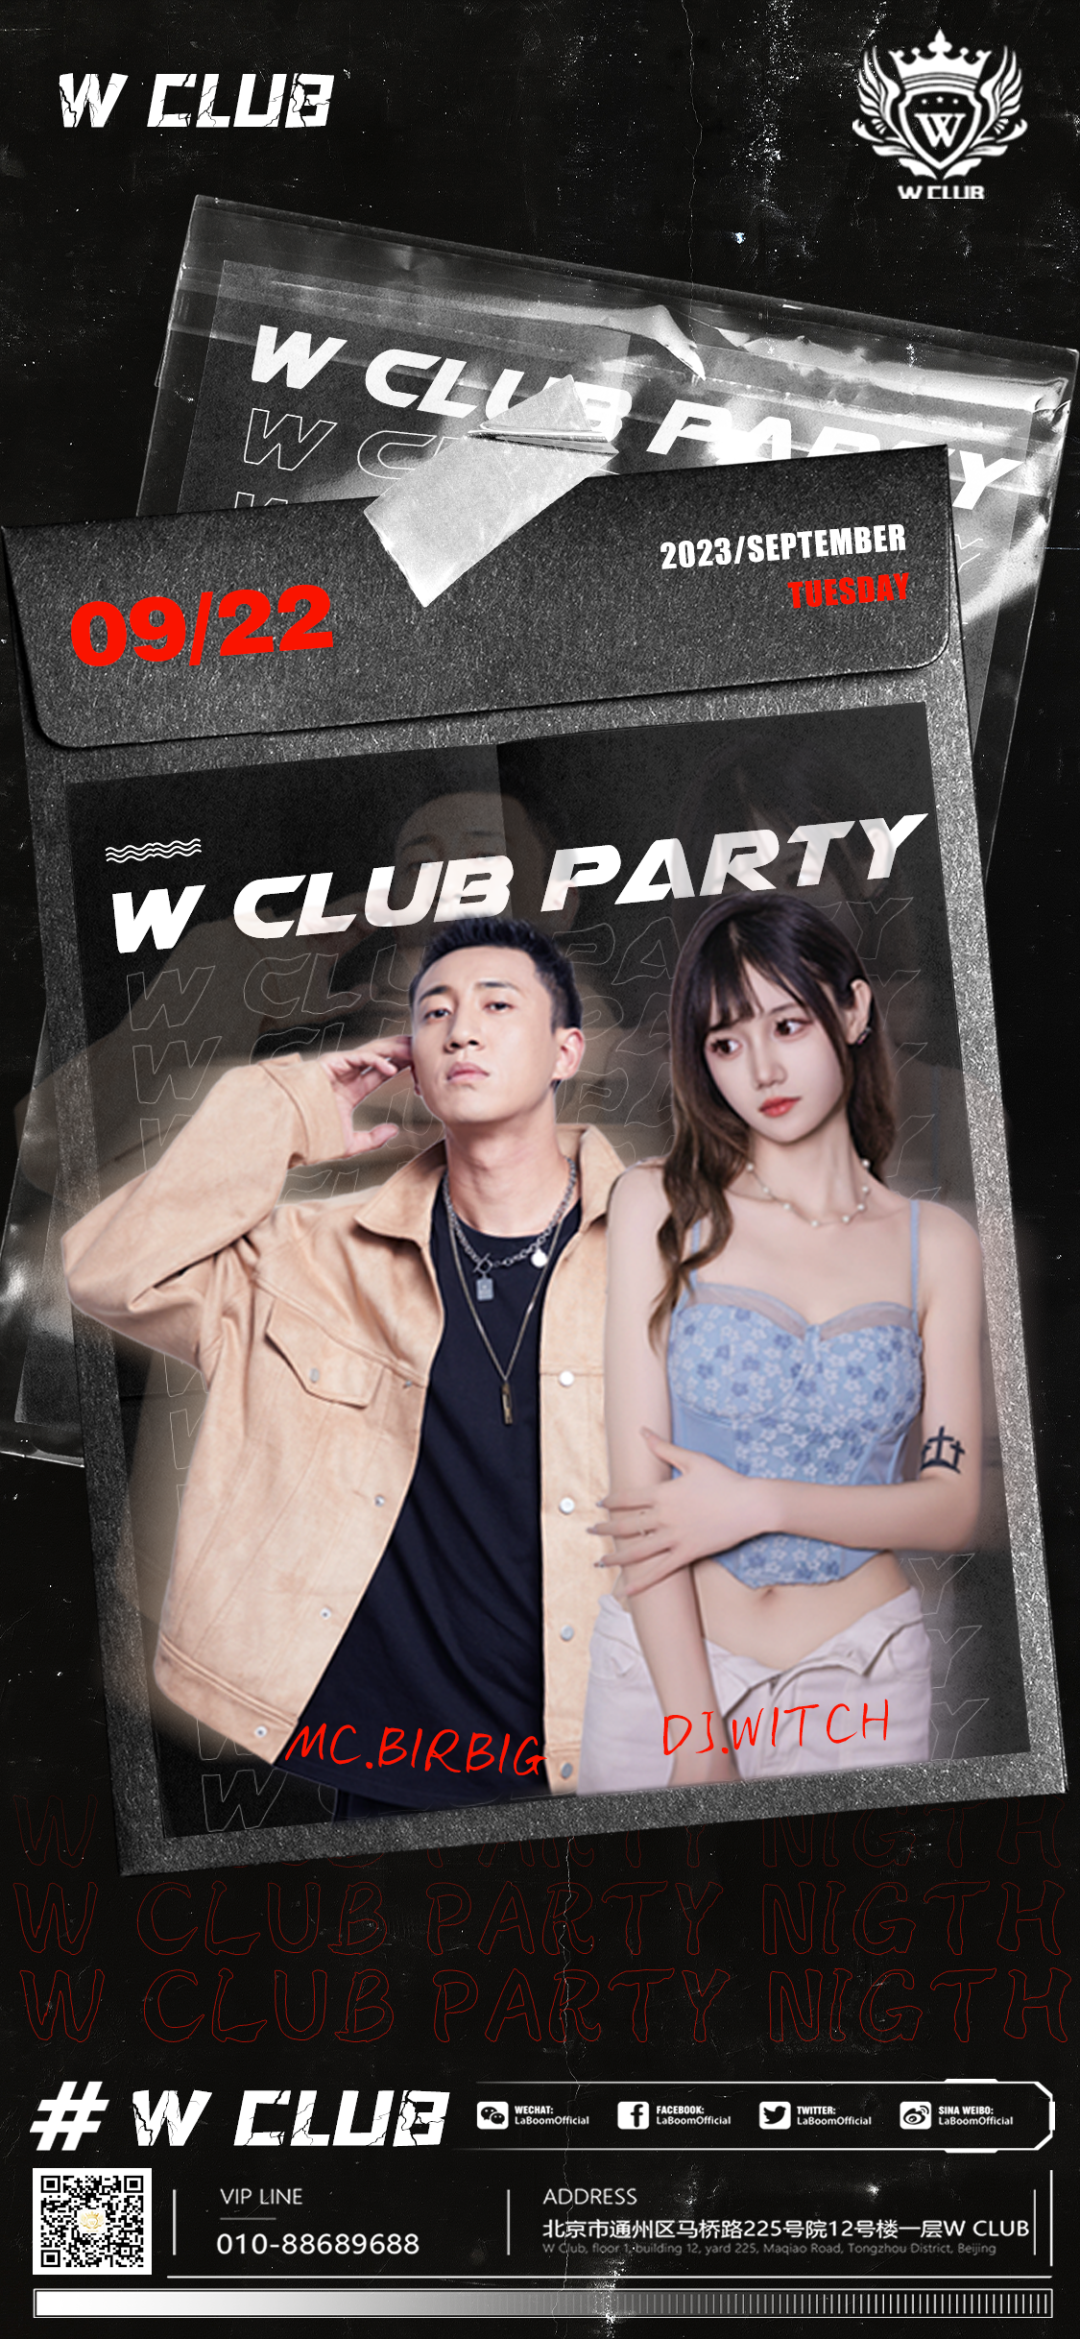 北京W-CLUB9月22日/DJ- WITCH MC-BIRBIG重磅嘉宾来袭 掀起W-CLUB超强音浪-北京W酒吧/WCLUB